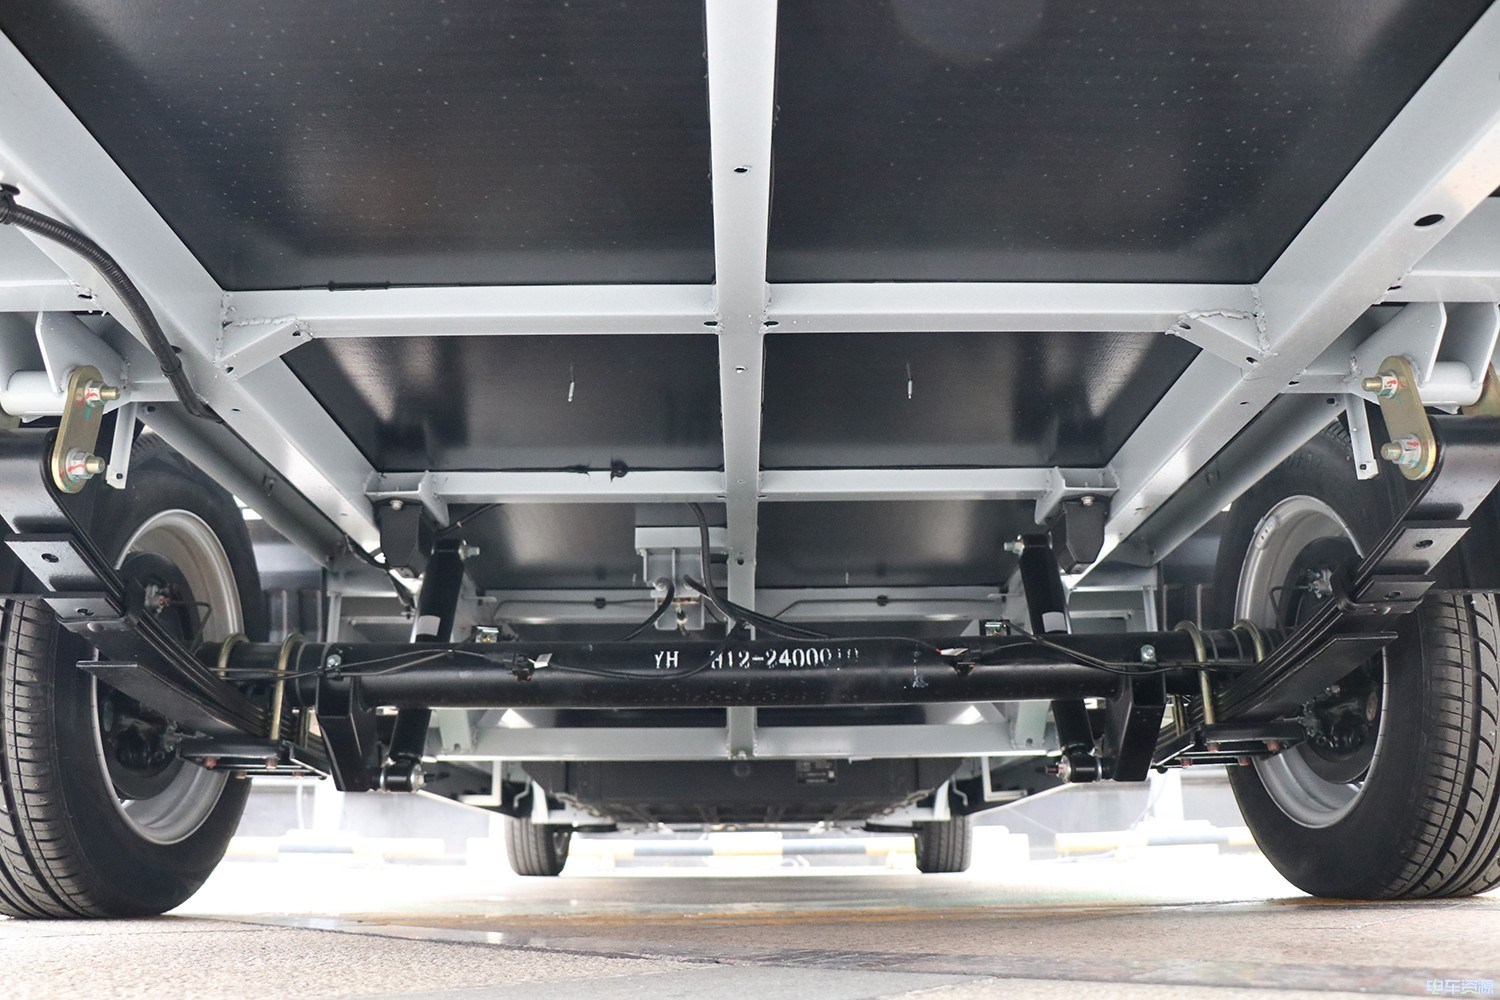 三合一電驅動 全鋁車身 整裝3噸能爬坡 吉奧奧騰滿載實測